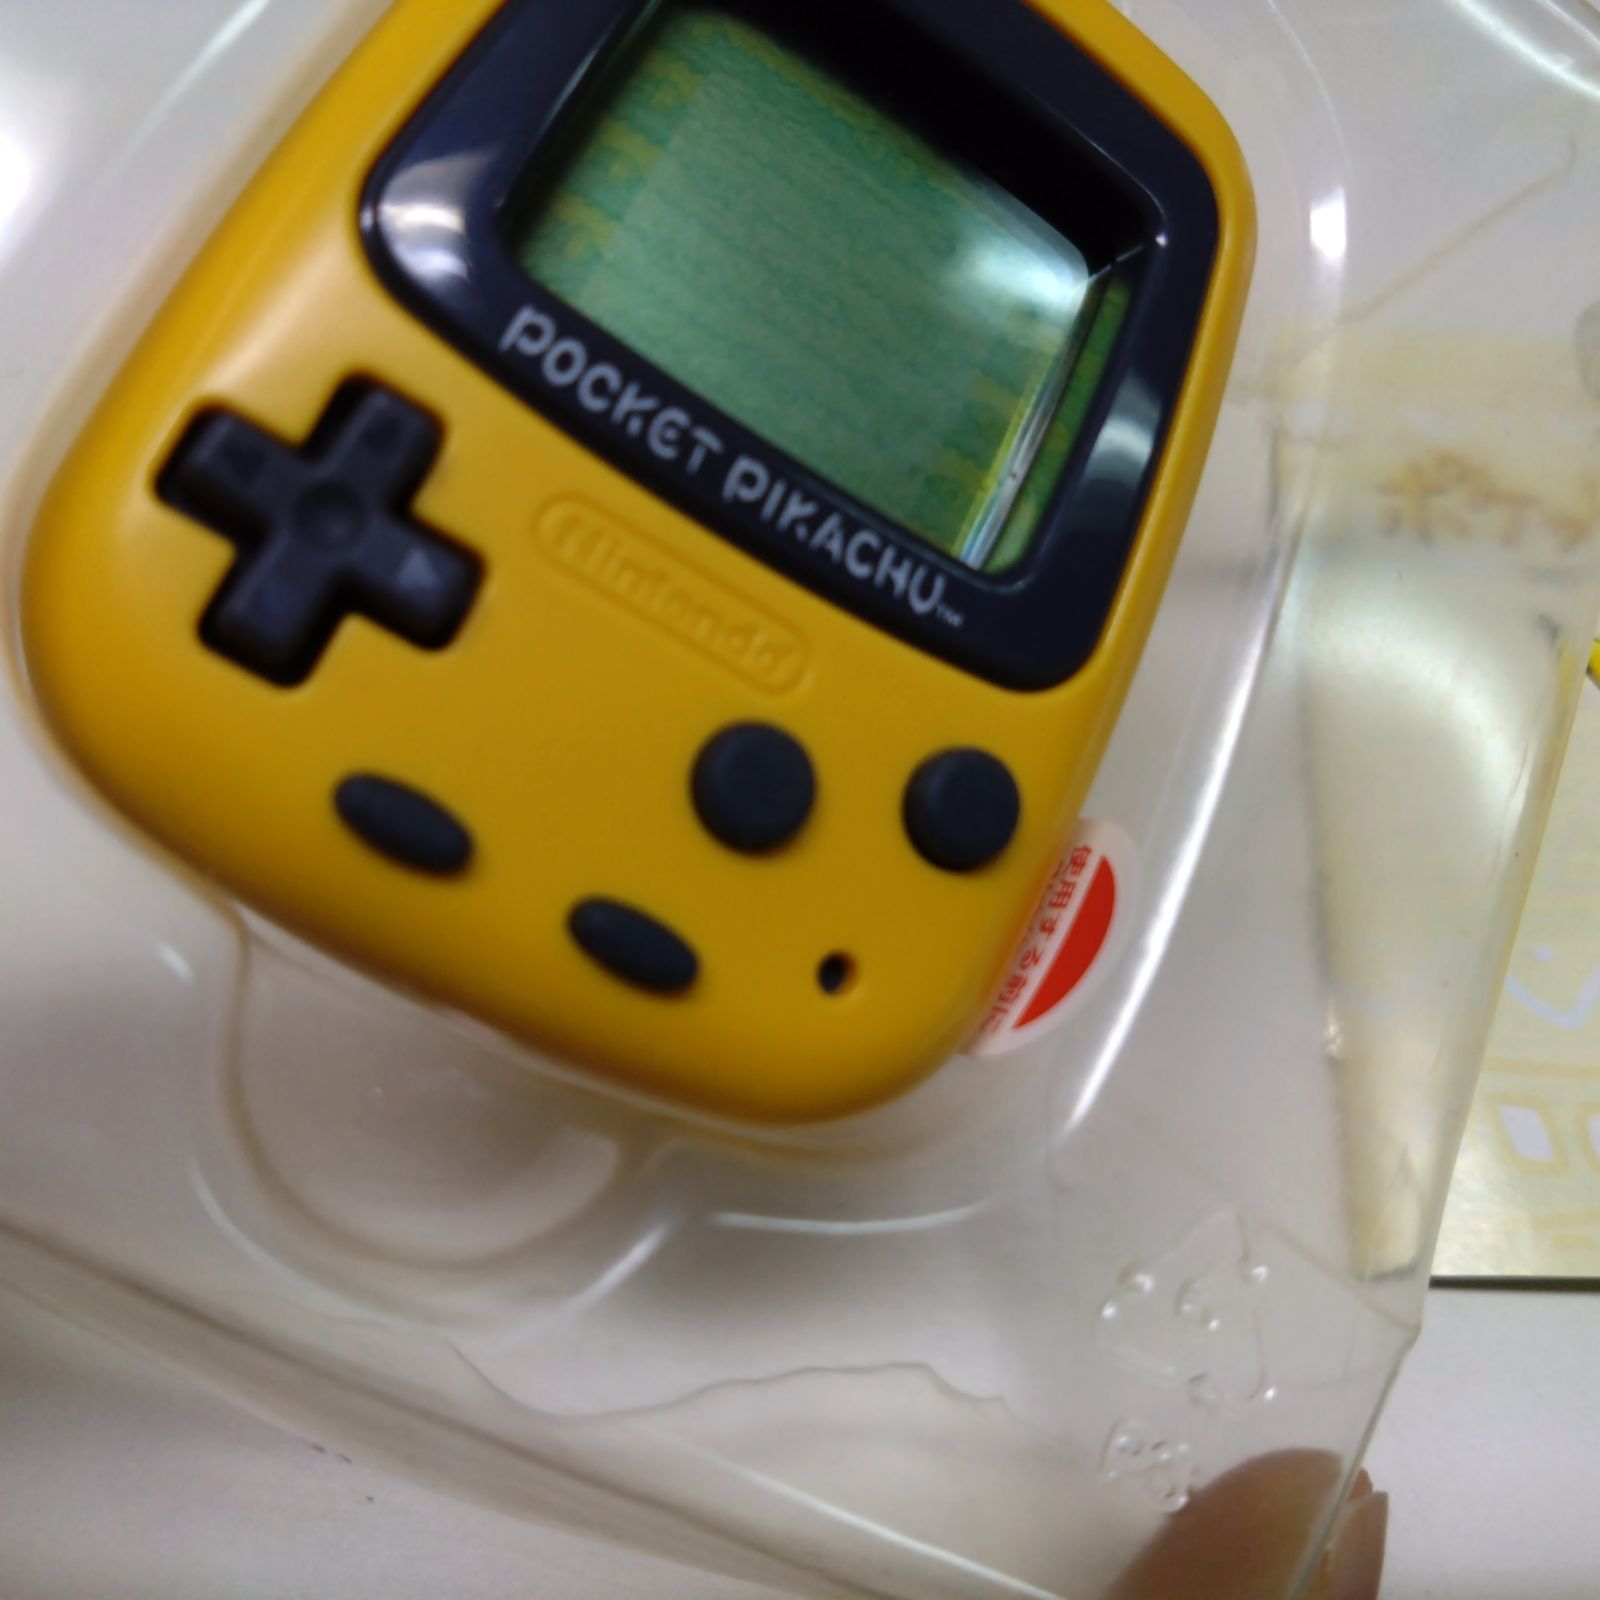 1121 ポケットピカチュウ pocket pikachu 黄色 万歩計 ゲーム Nintendo 